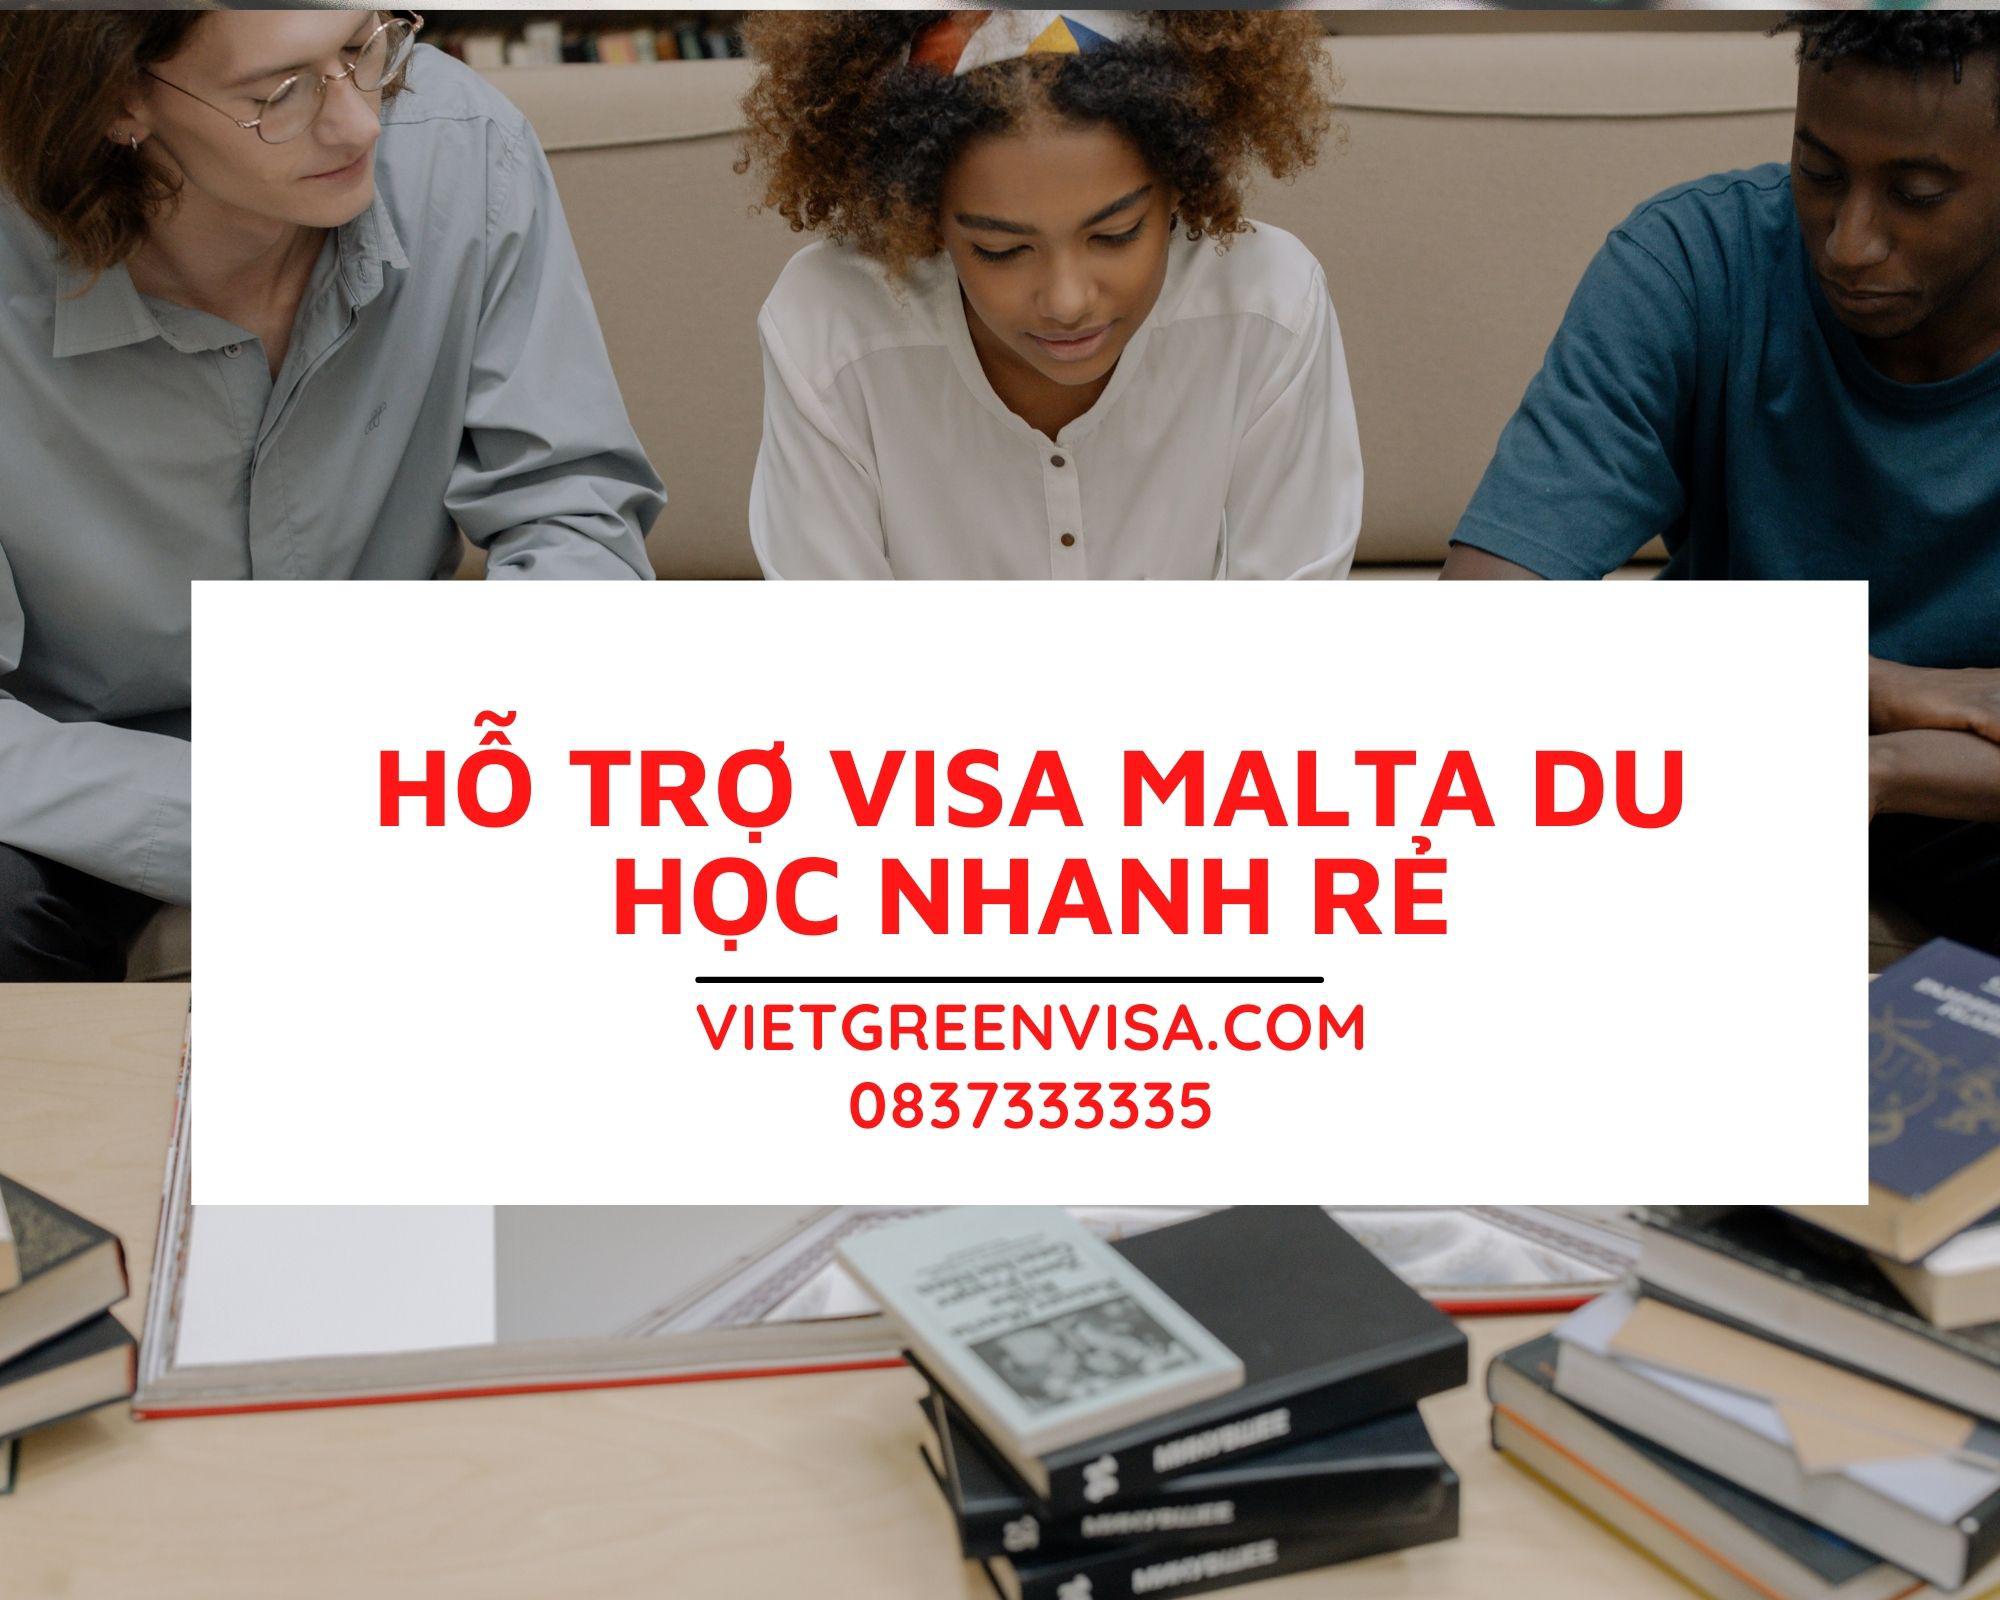 Dịch vụ làm visa du học Malta chuyên nghiệp